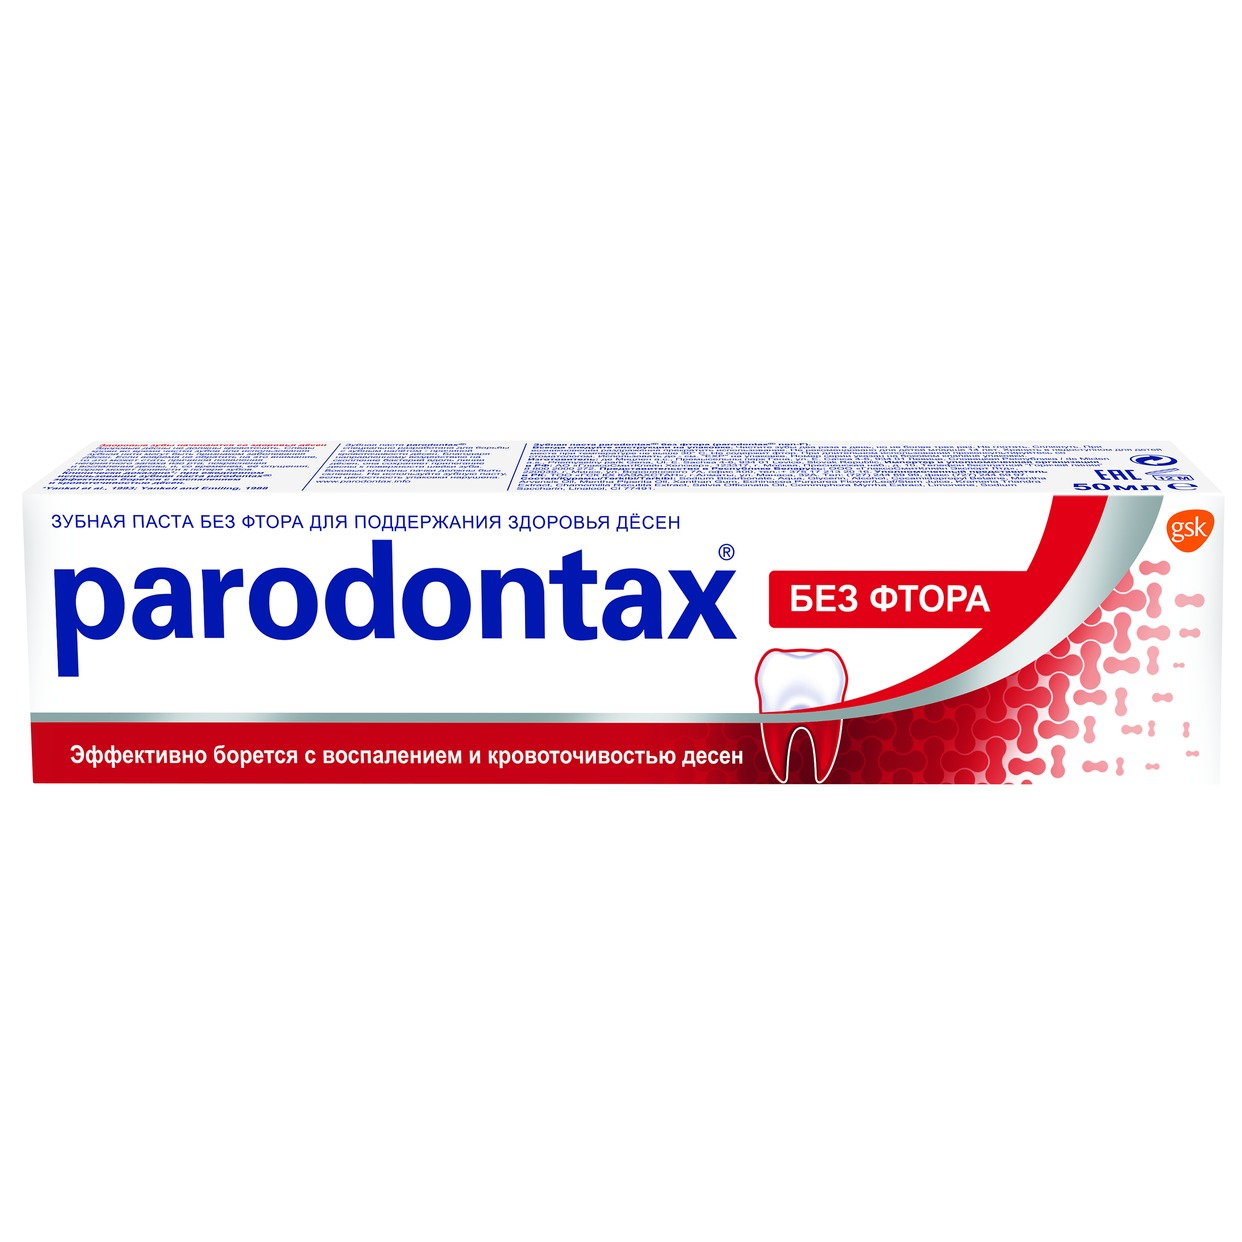 Зубная паста Parodontax без фтора 50 мл по акции в Пятерочке